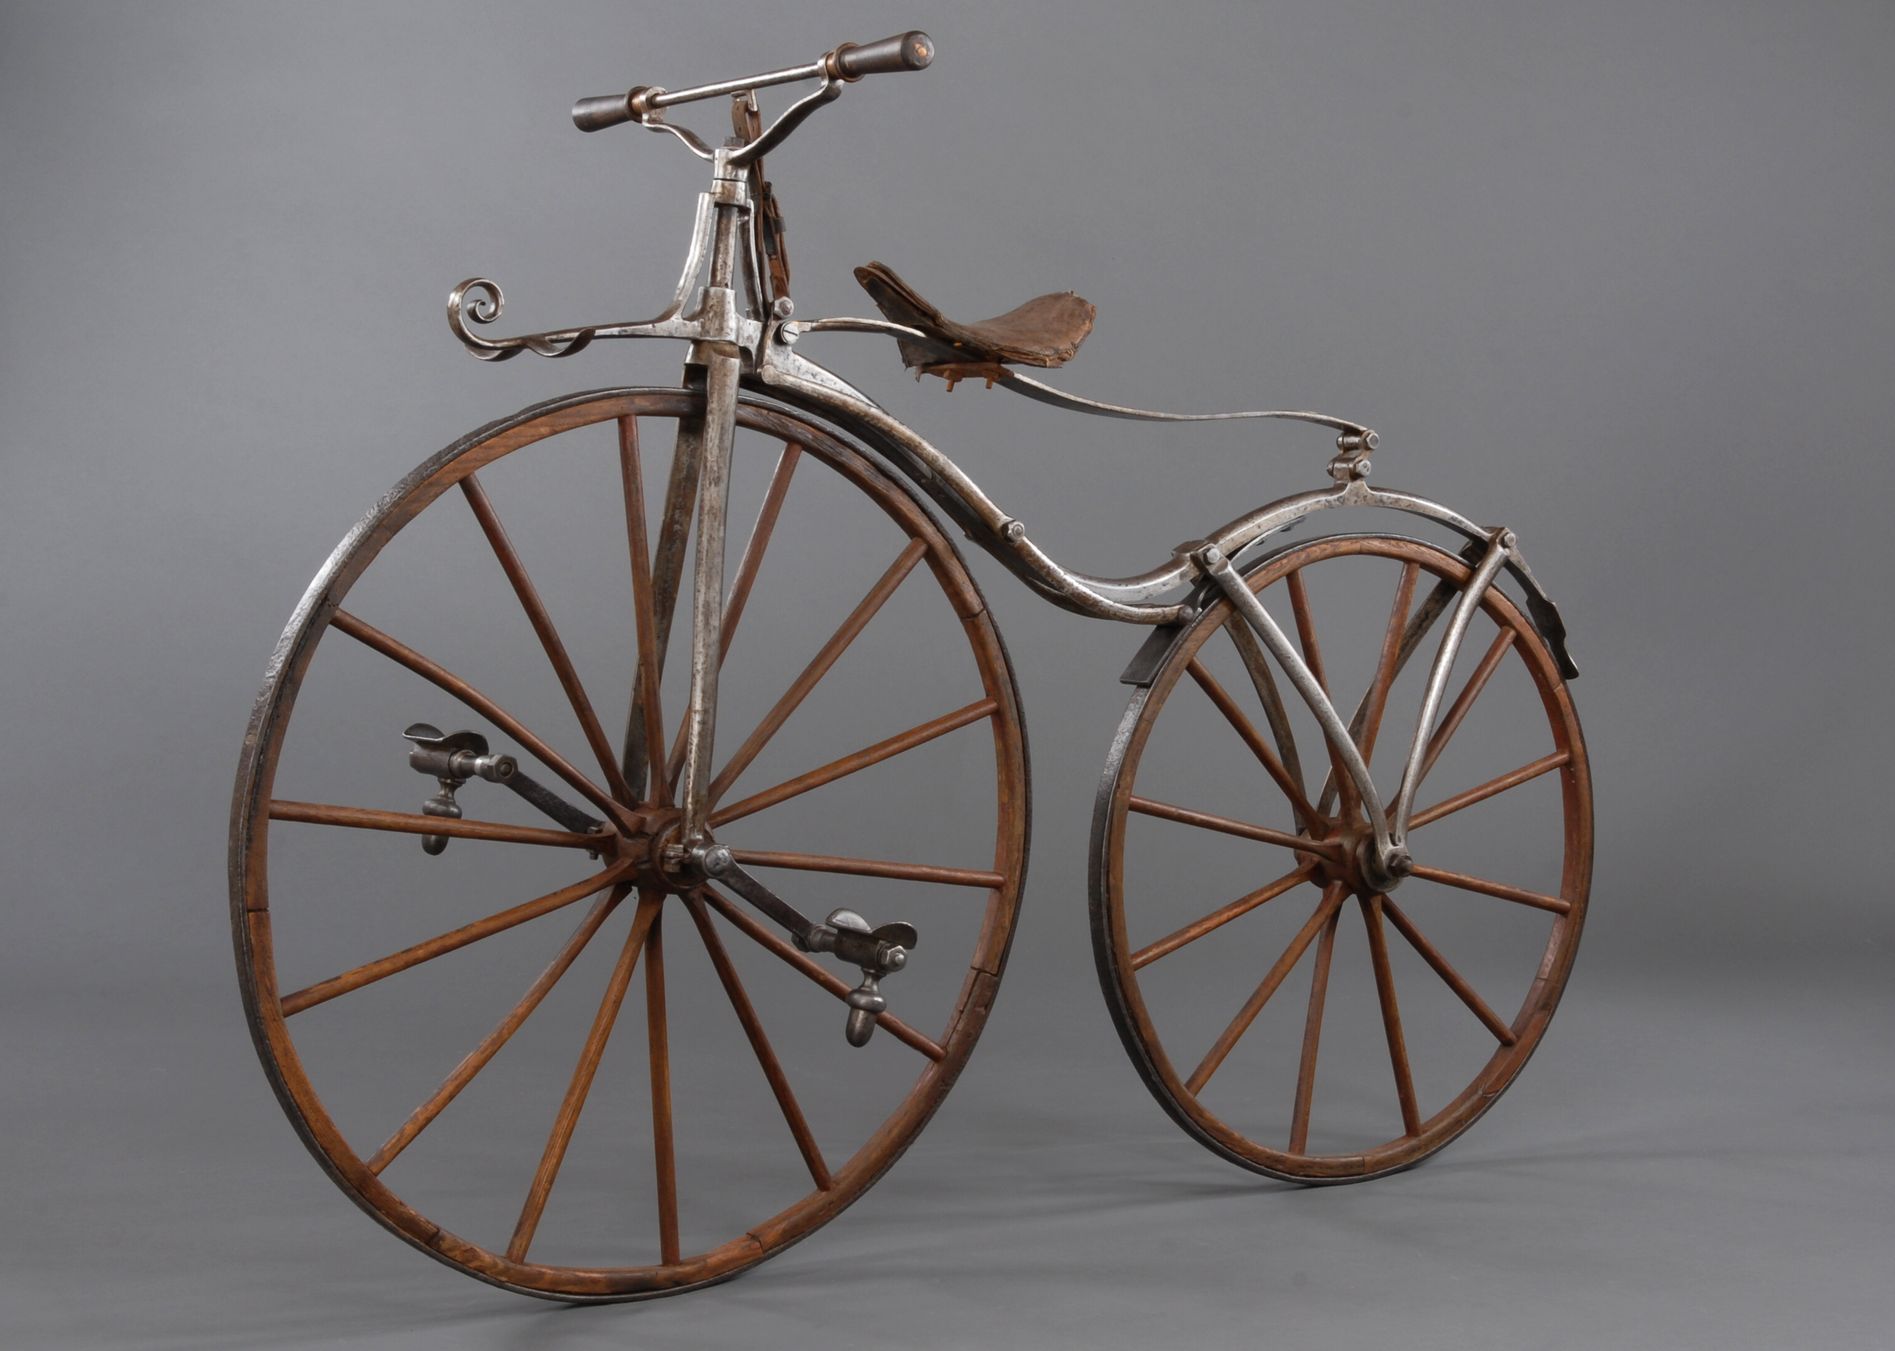 Díky kolegům z řad cyklistických nadšenců se Štěrba dostane i ke vzácným modelům. Pracoval třeba na tomto vysokém kole z šedesátých let 19. století.